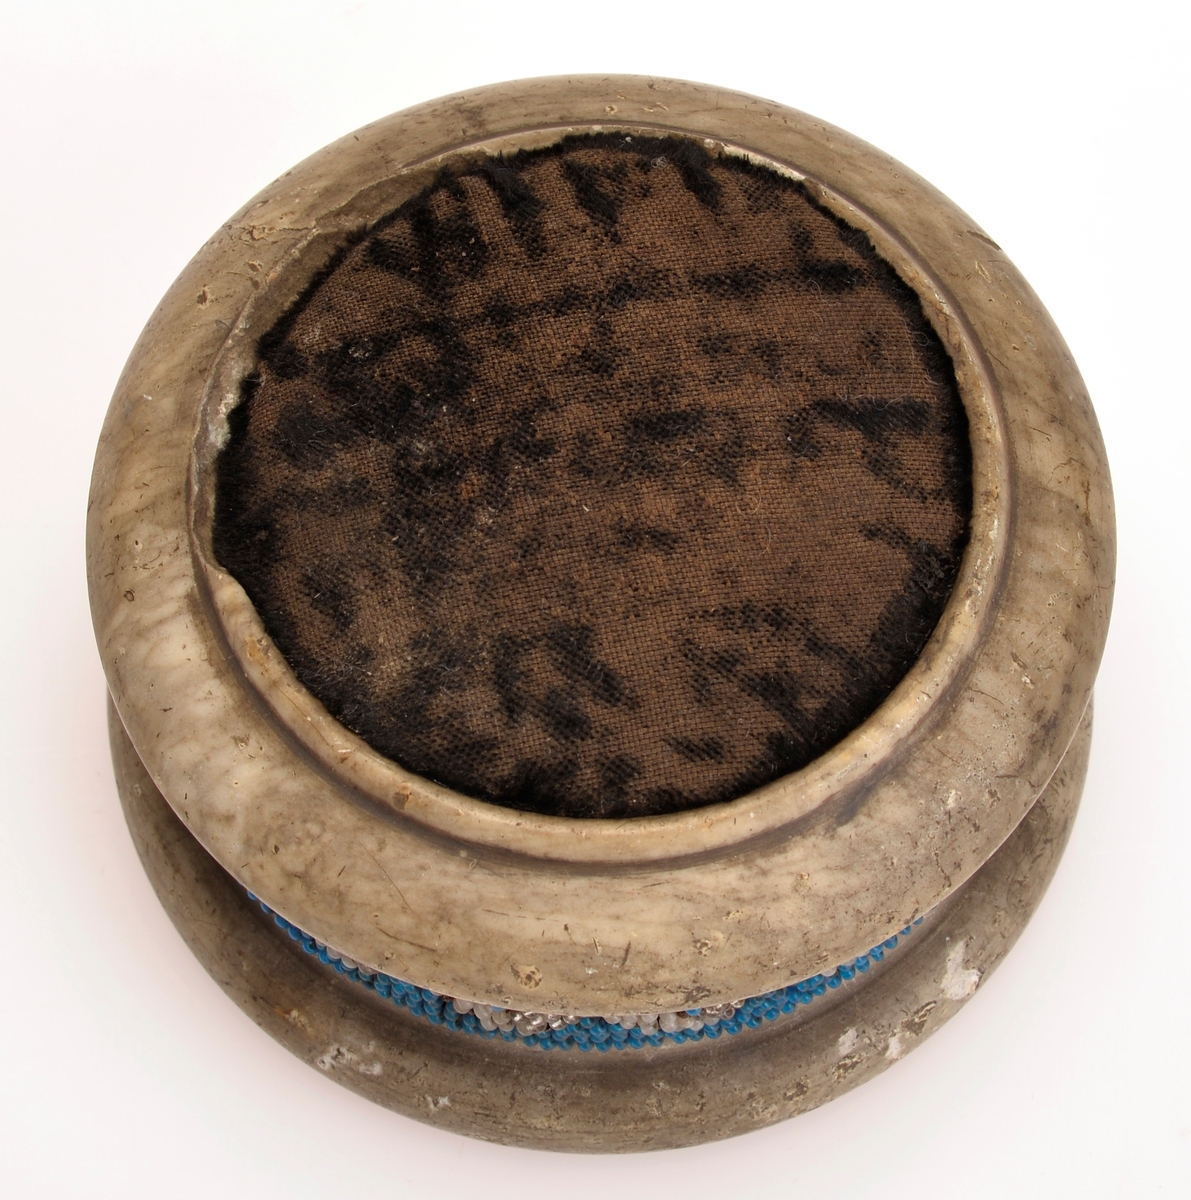 Rundformet kleberstein med nålepute av sort fløyel på toppen. Pyntet med mønstret perlebånd med hvite, blå og gjennomsiktige glassperler på midten. Perlene er sydd på stramei.